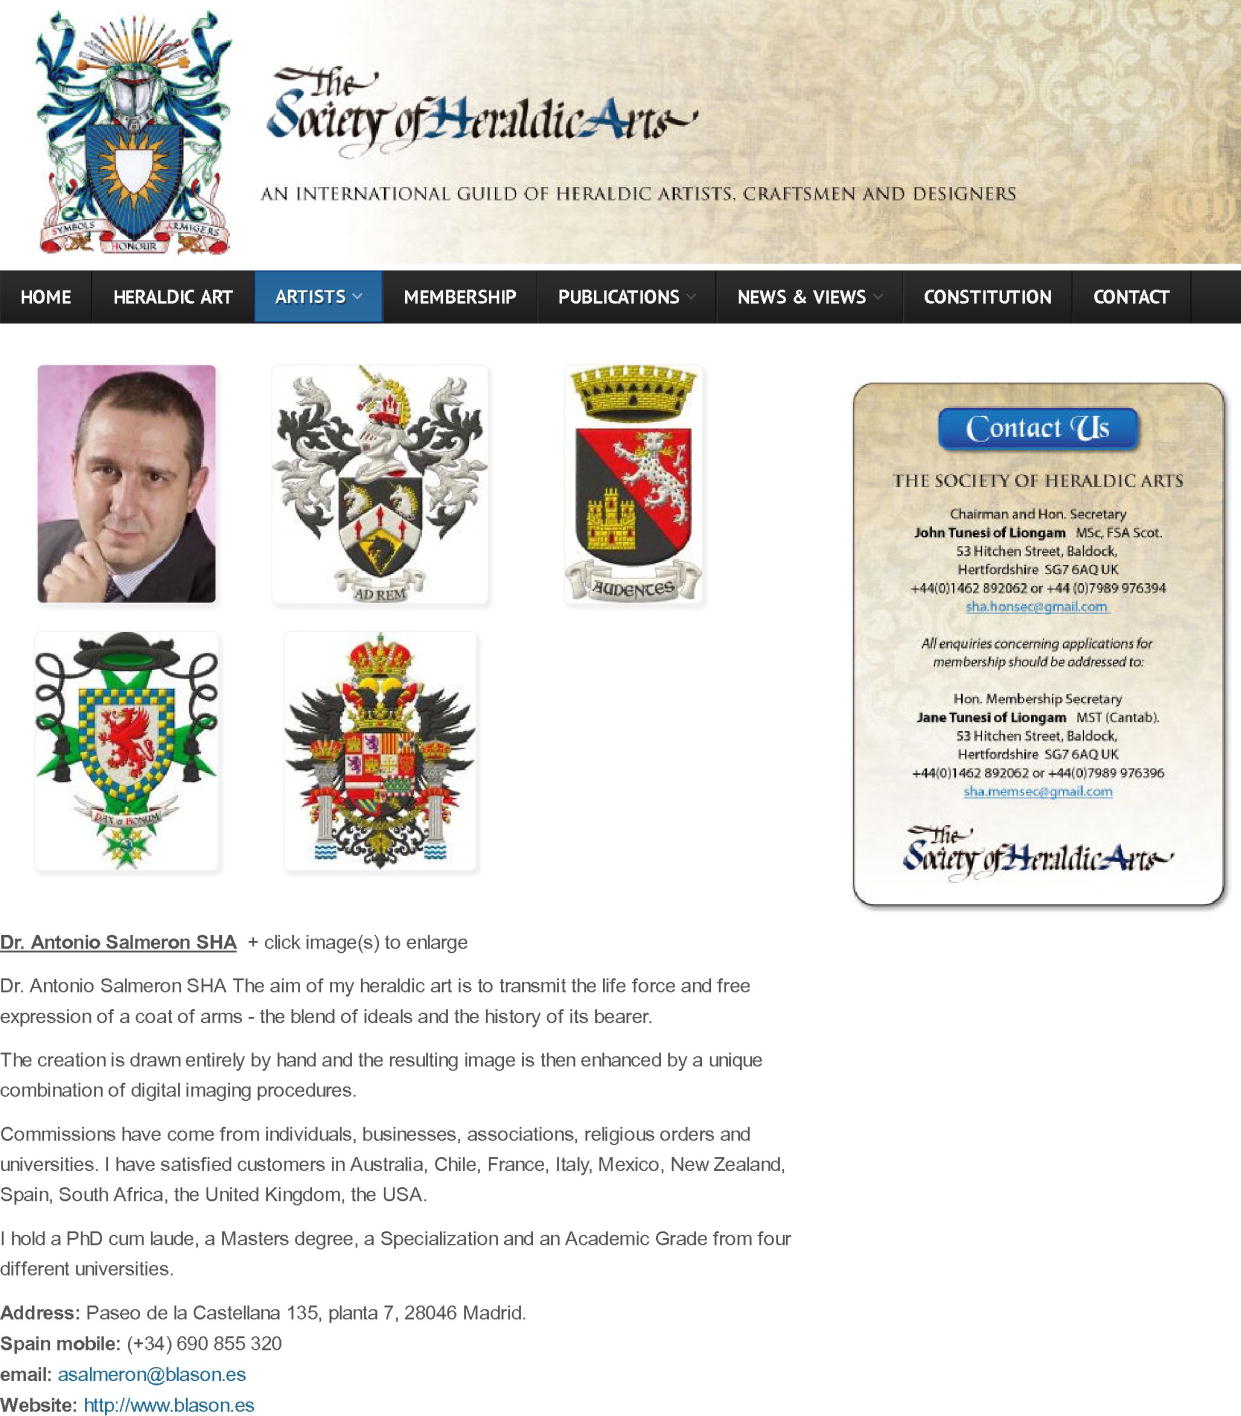 Society of Heraldic Arts, heraldic artist